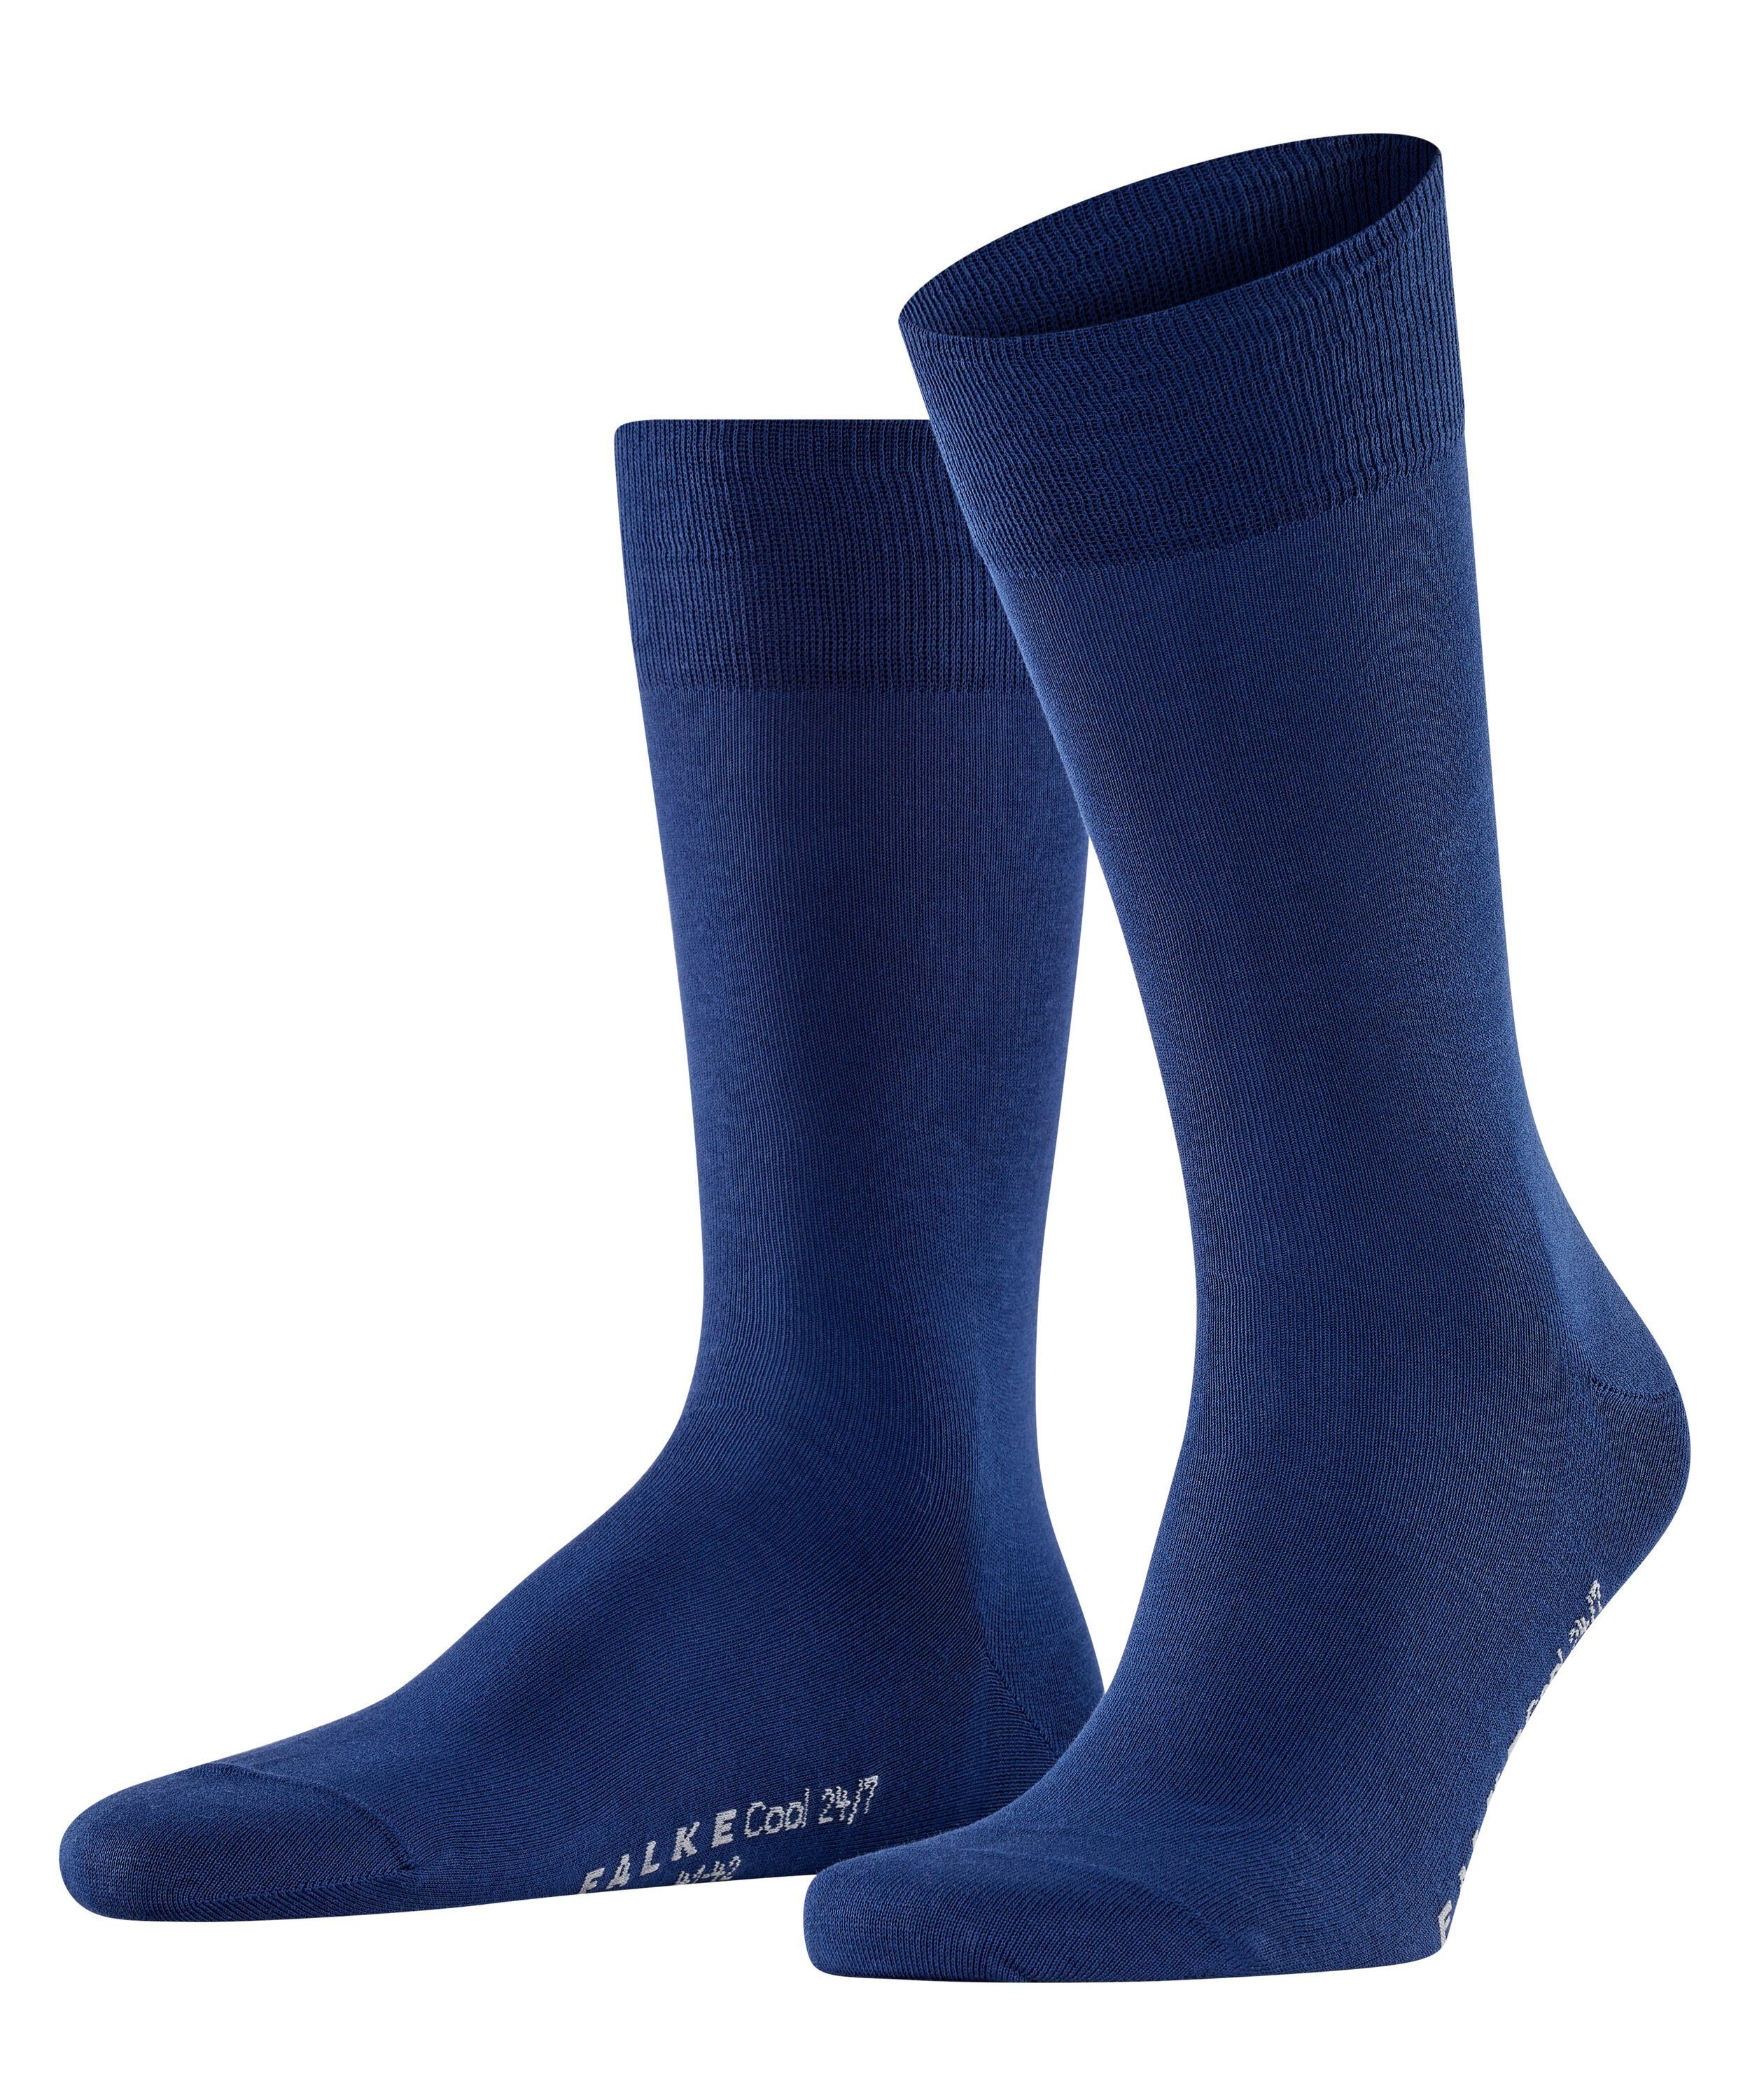 FALKE Socken Cool 24/7 (1-Paar) royal blue (6000)